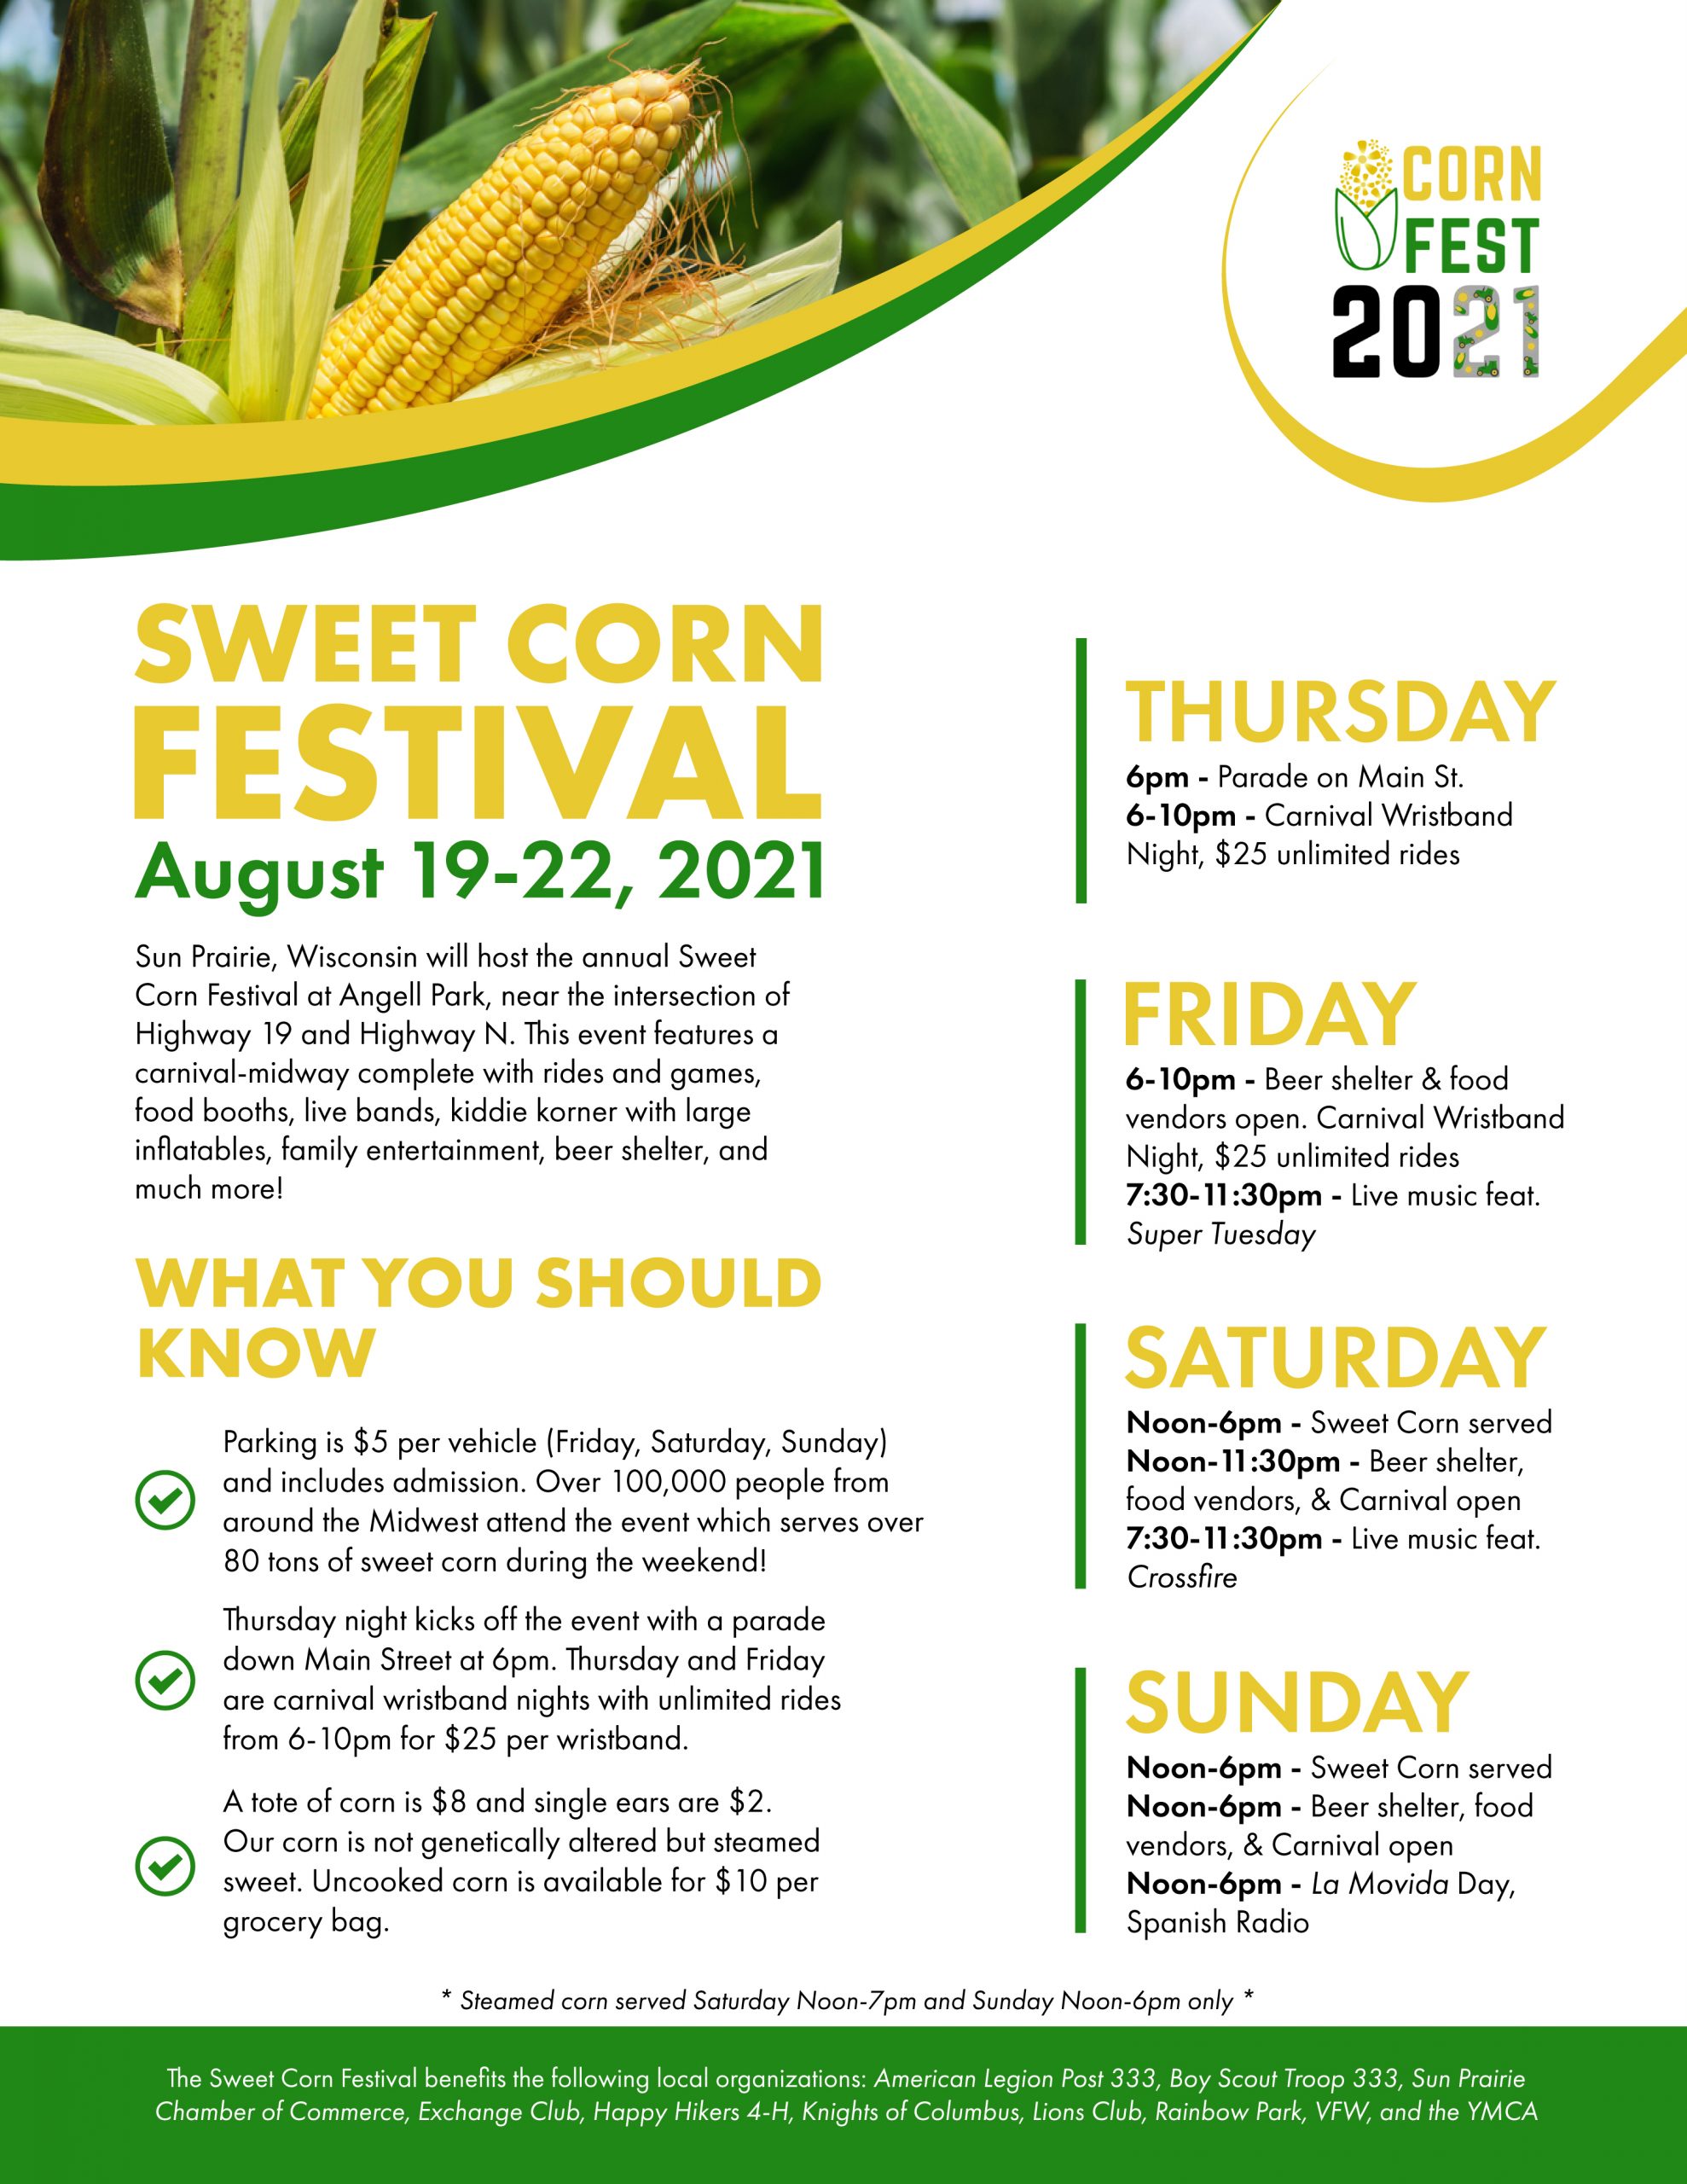 Sun Prairie Sweet Corn Festival, August 1922, 2021 State Trunk Tour